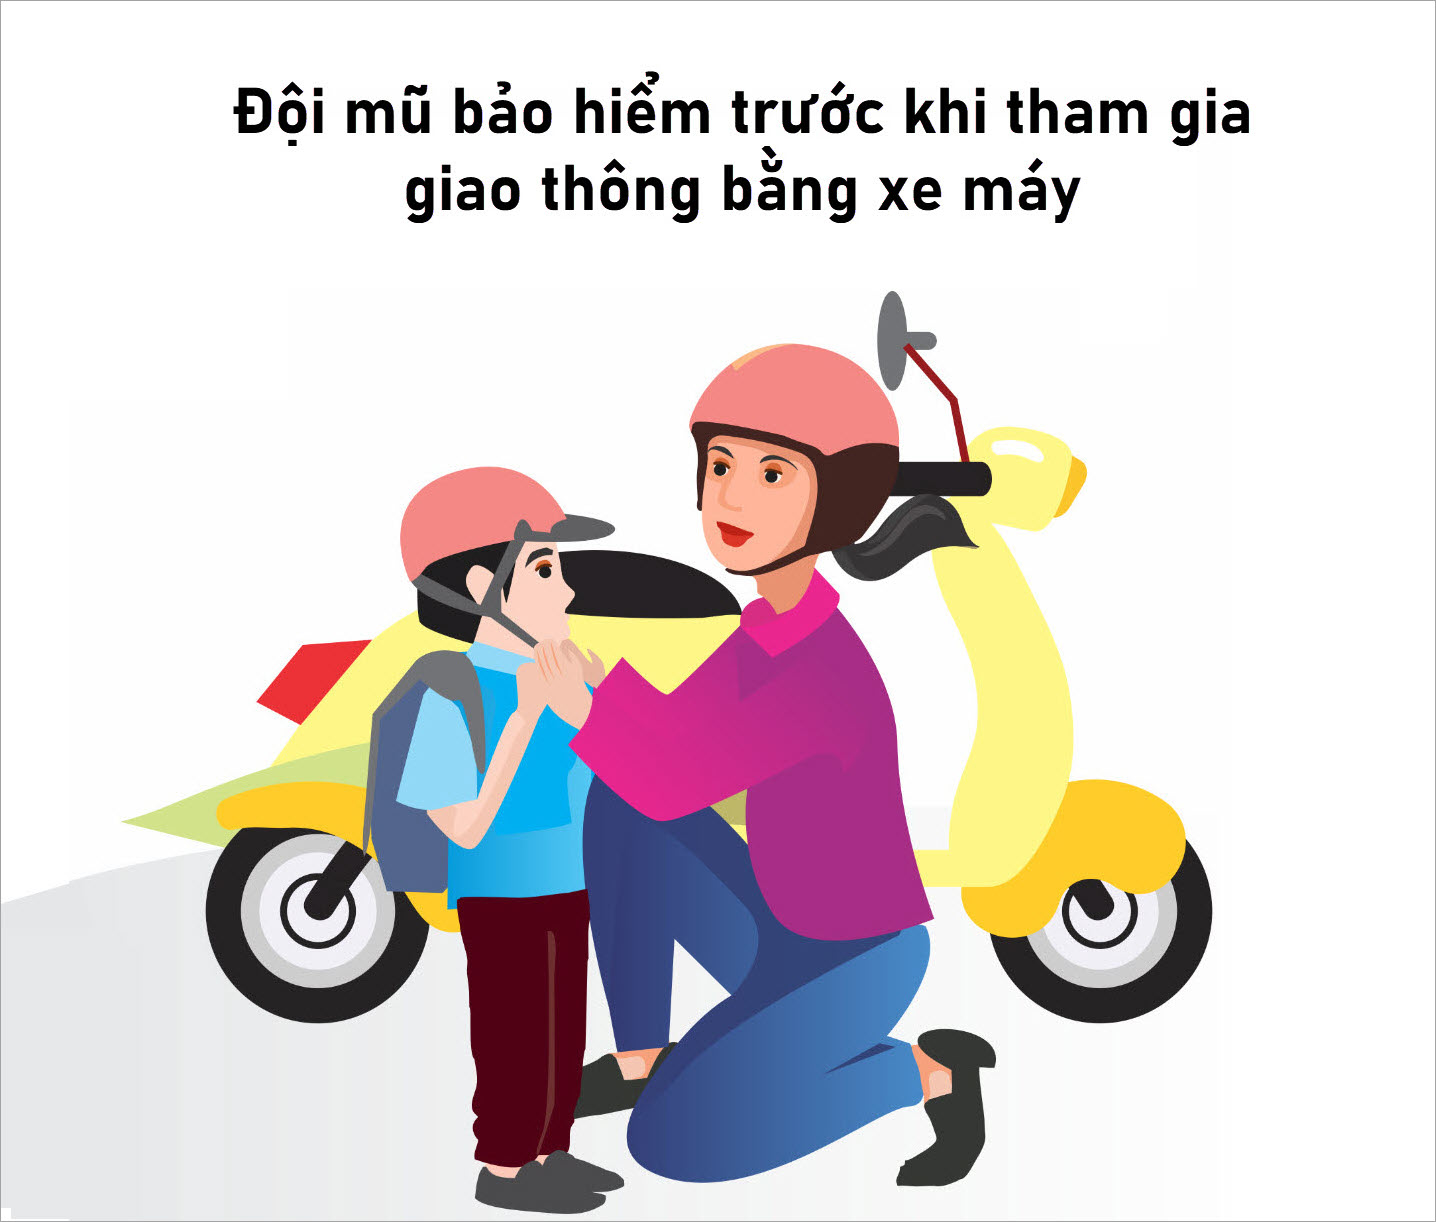 Poster an toàn giao thông - đội mũ bảo hiểm trước khi đi xe máy